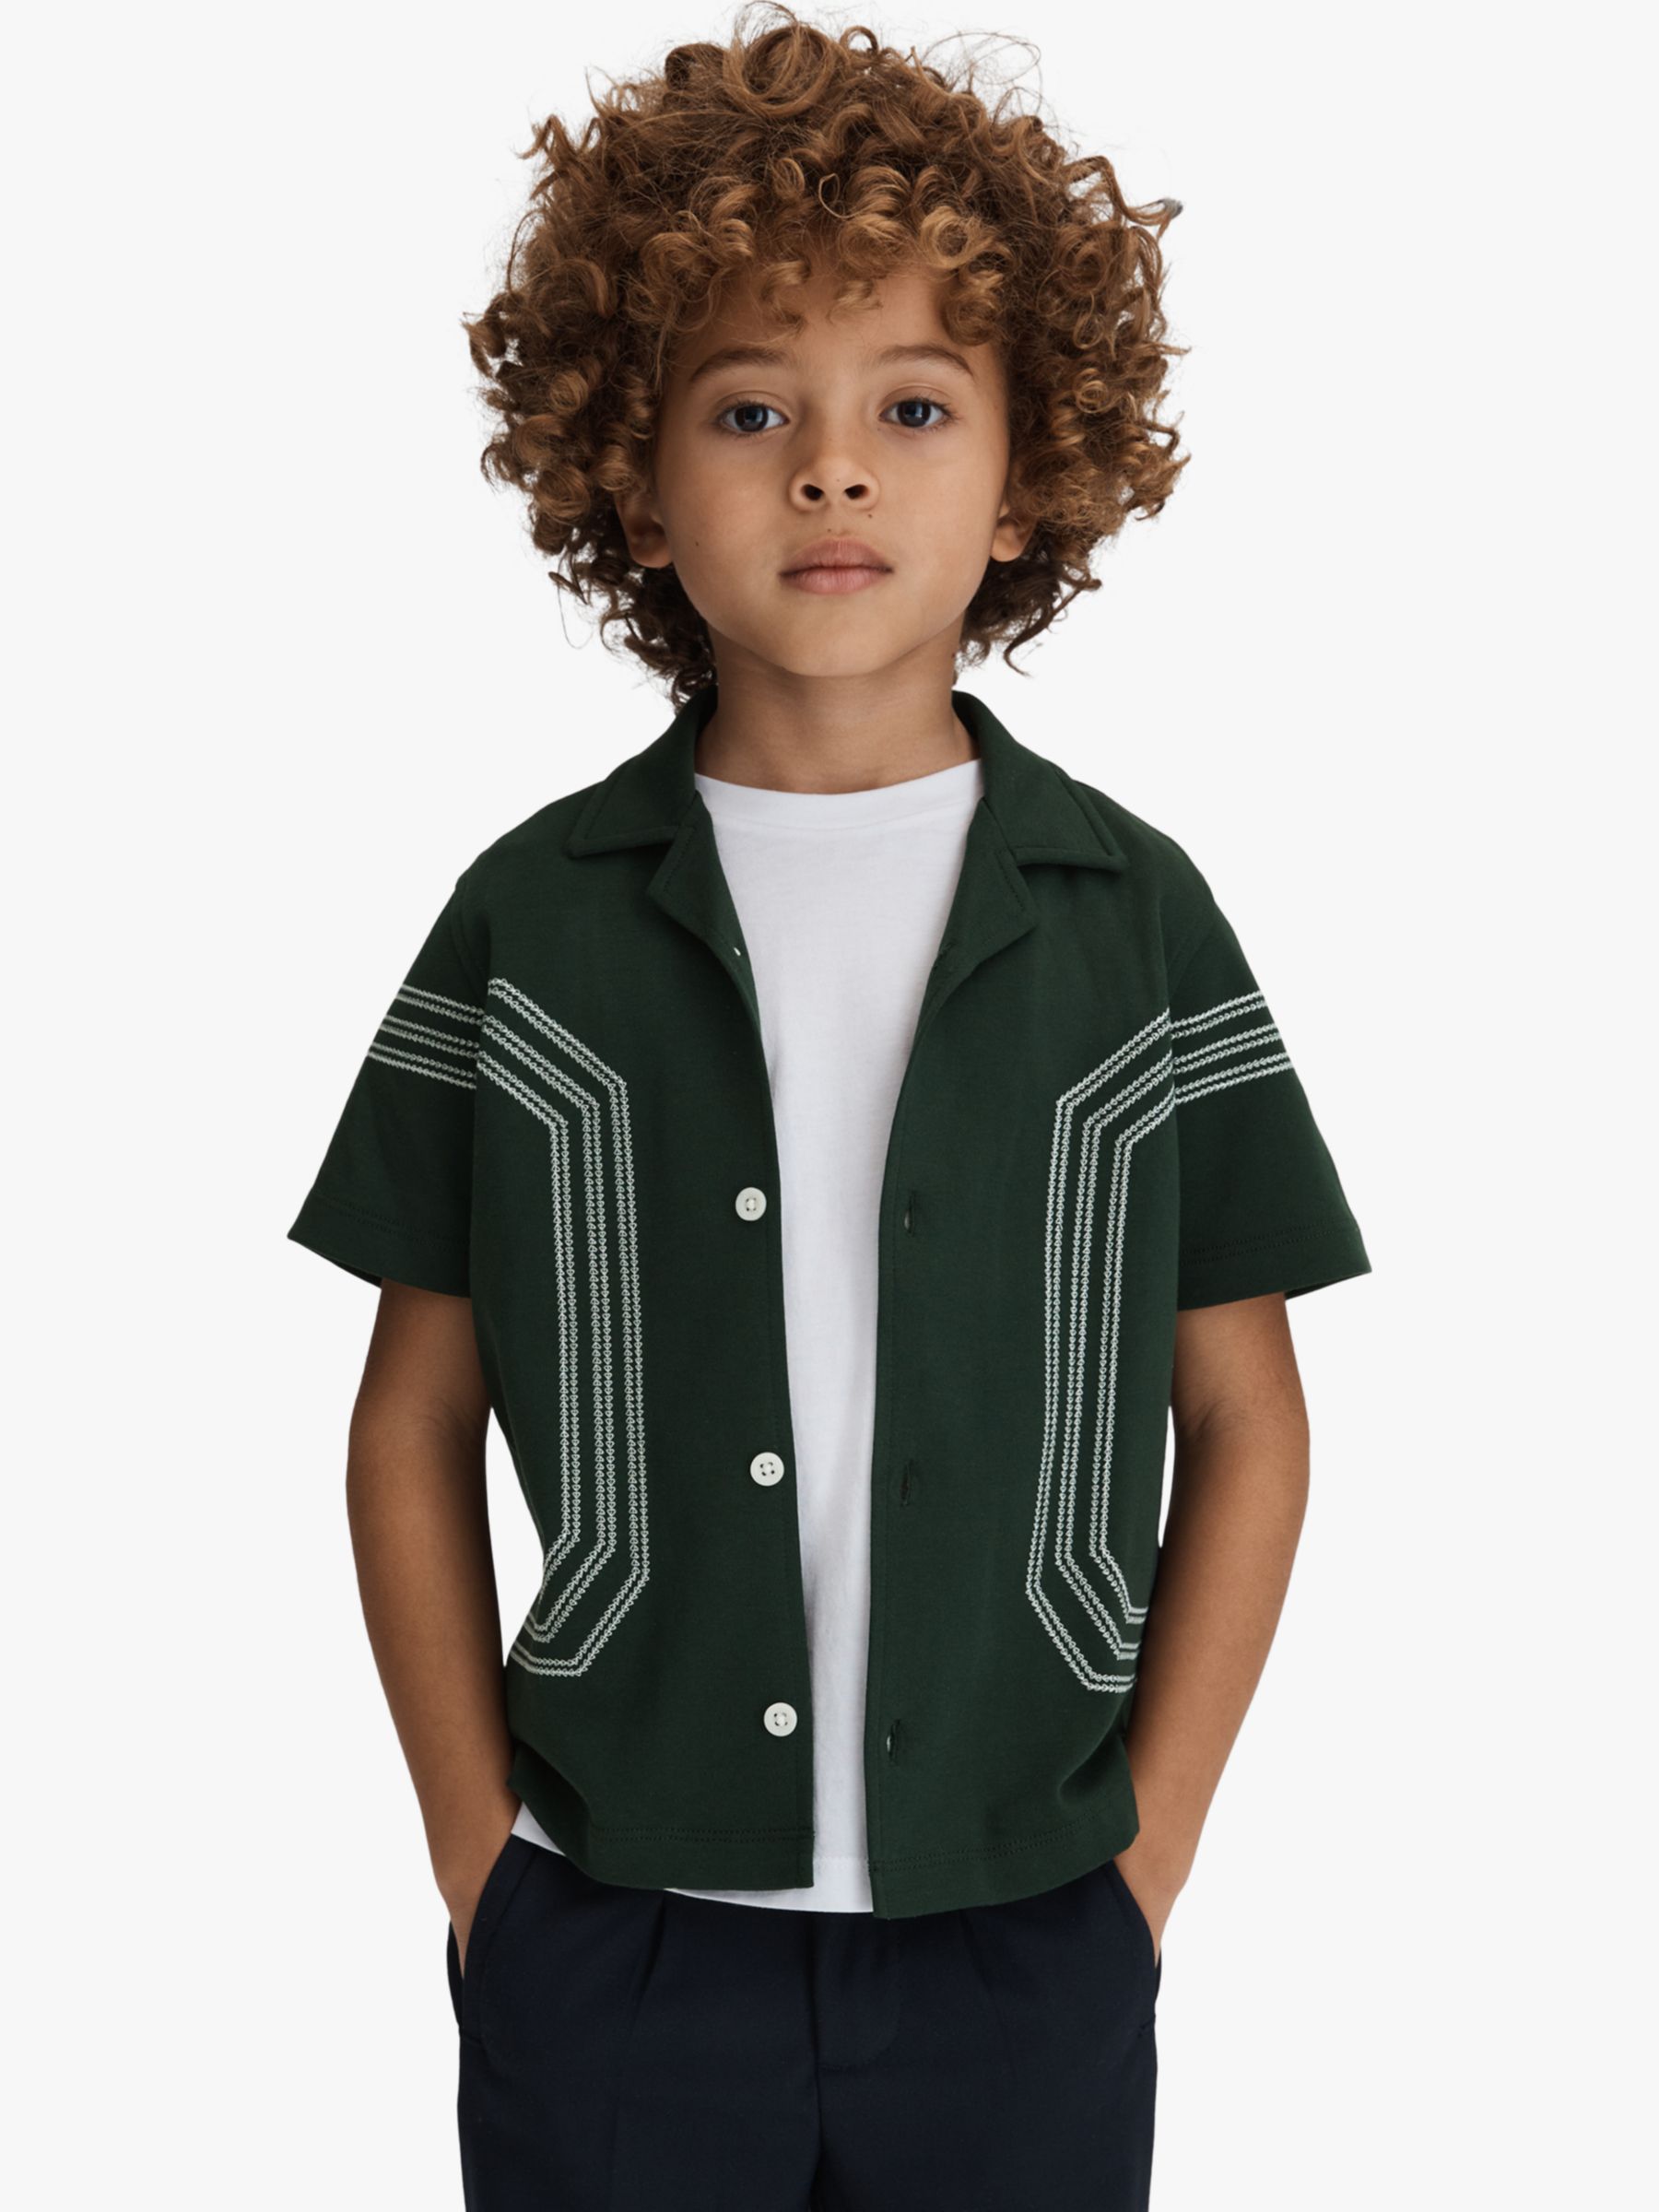 Reiss Kids' Arlington Embroidered Cuban Collar Shirt, Green, 3-4 years